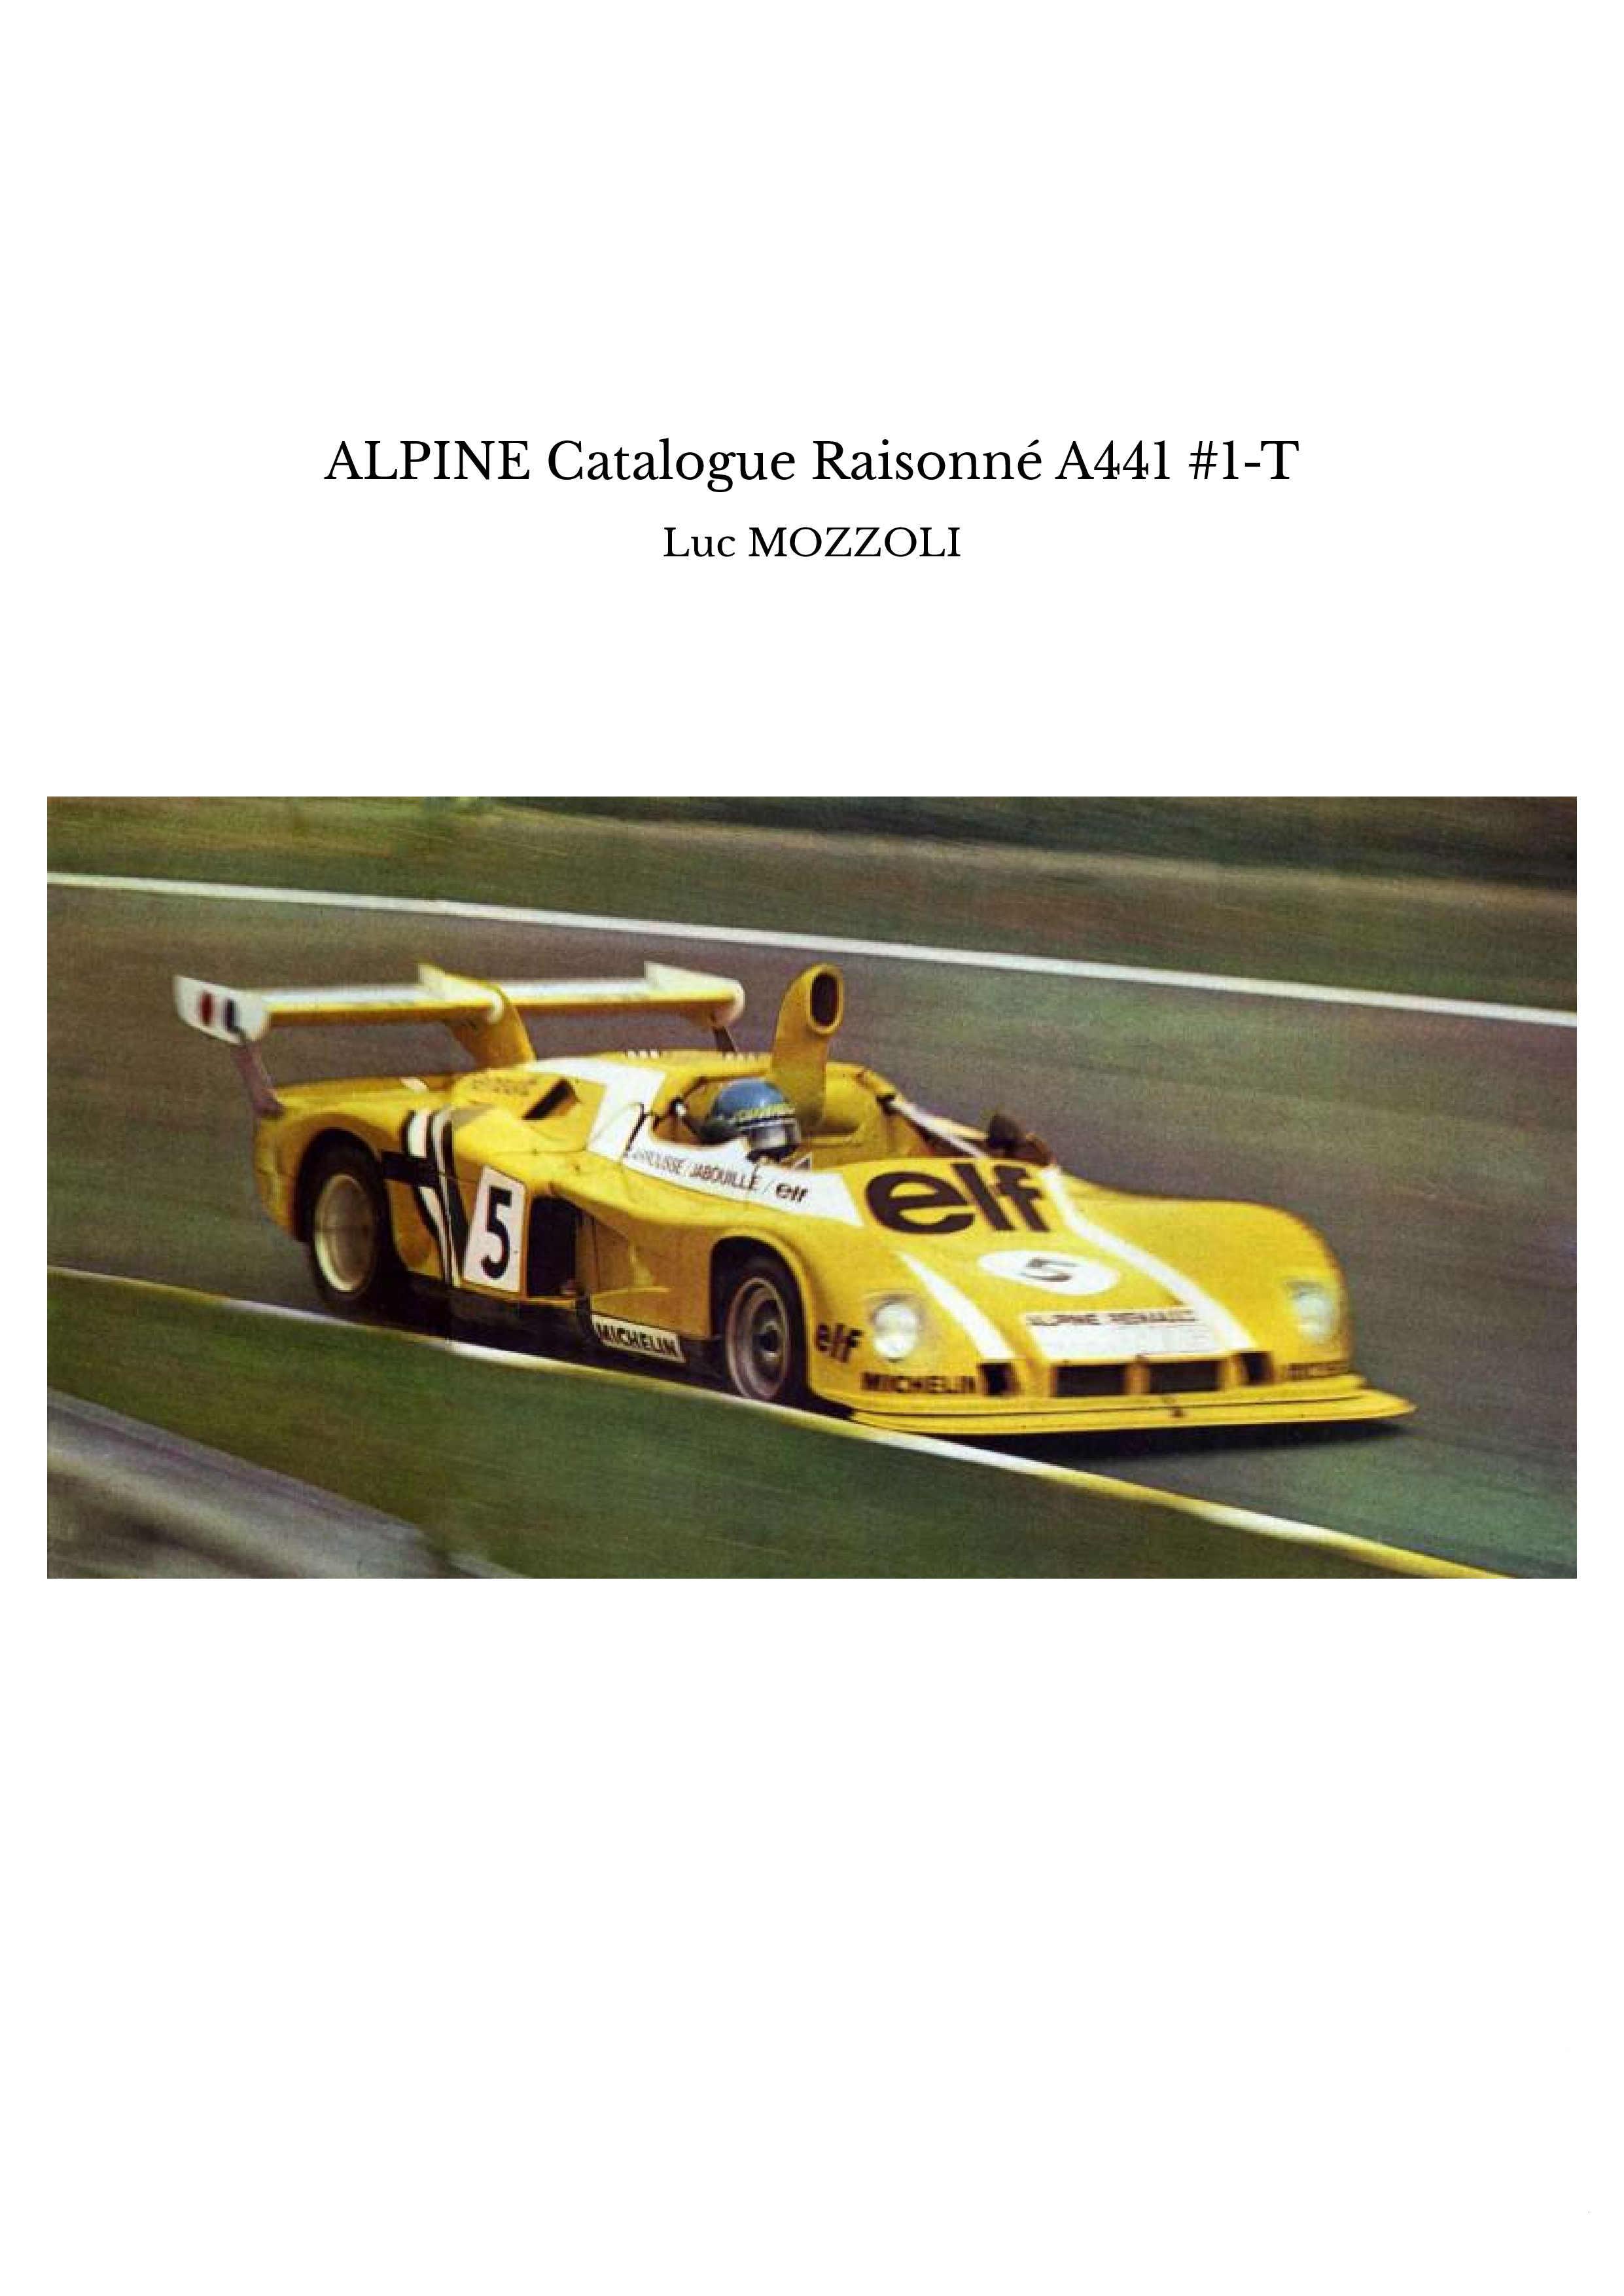 ALPINE Catalogue Raisonné A441 #1-T